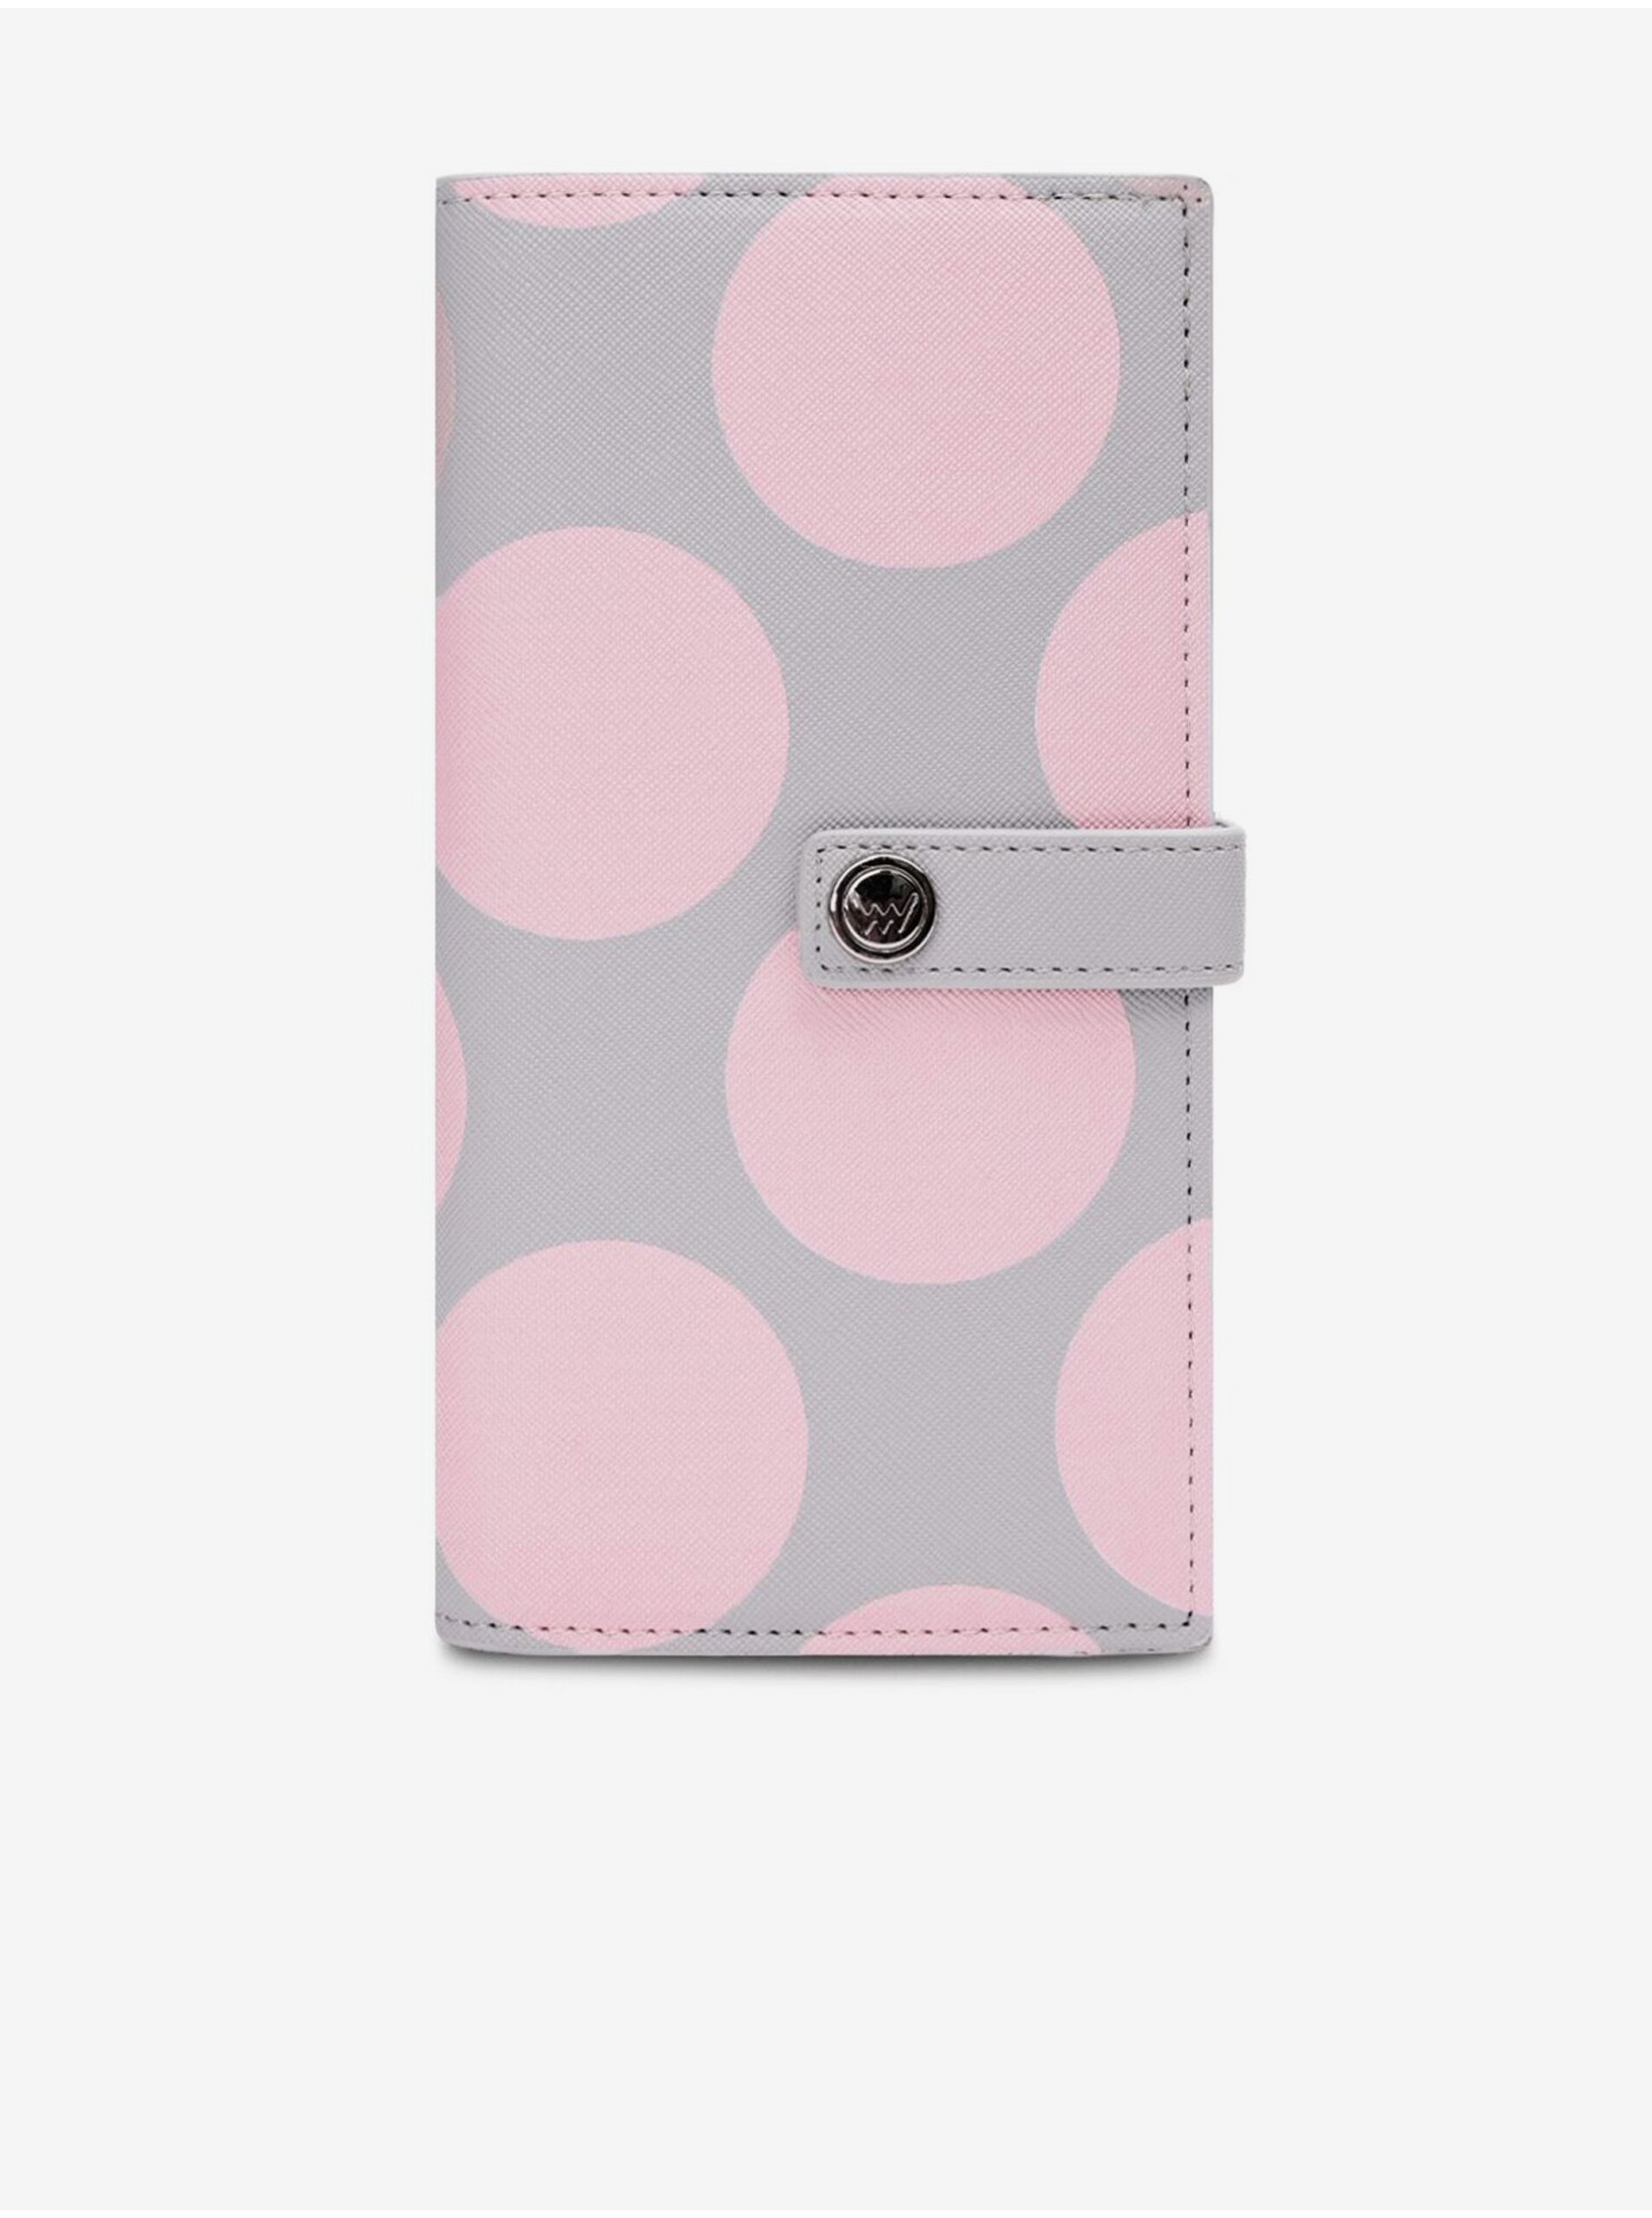 E-shop Šedo-ružová dámska bodkovaná peňaženka VUCH Mora